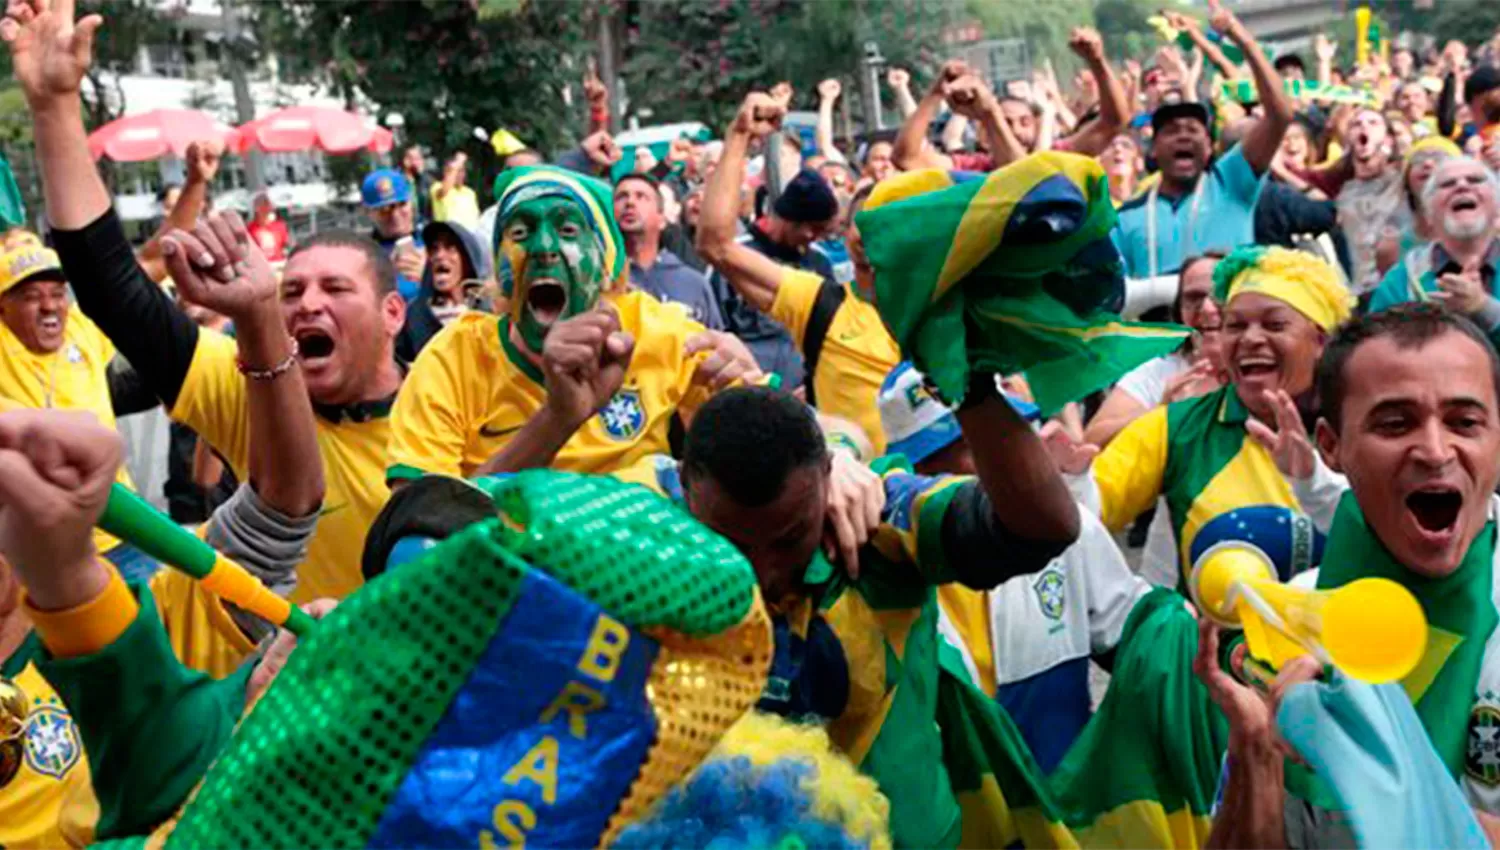 NO SE OLVIDARON DE ARGENTINA. Los hinchas de Brasil cantaron en contra de los argentinos.  (FOTO TOMADA DE TWITTER)